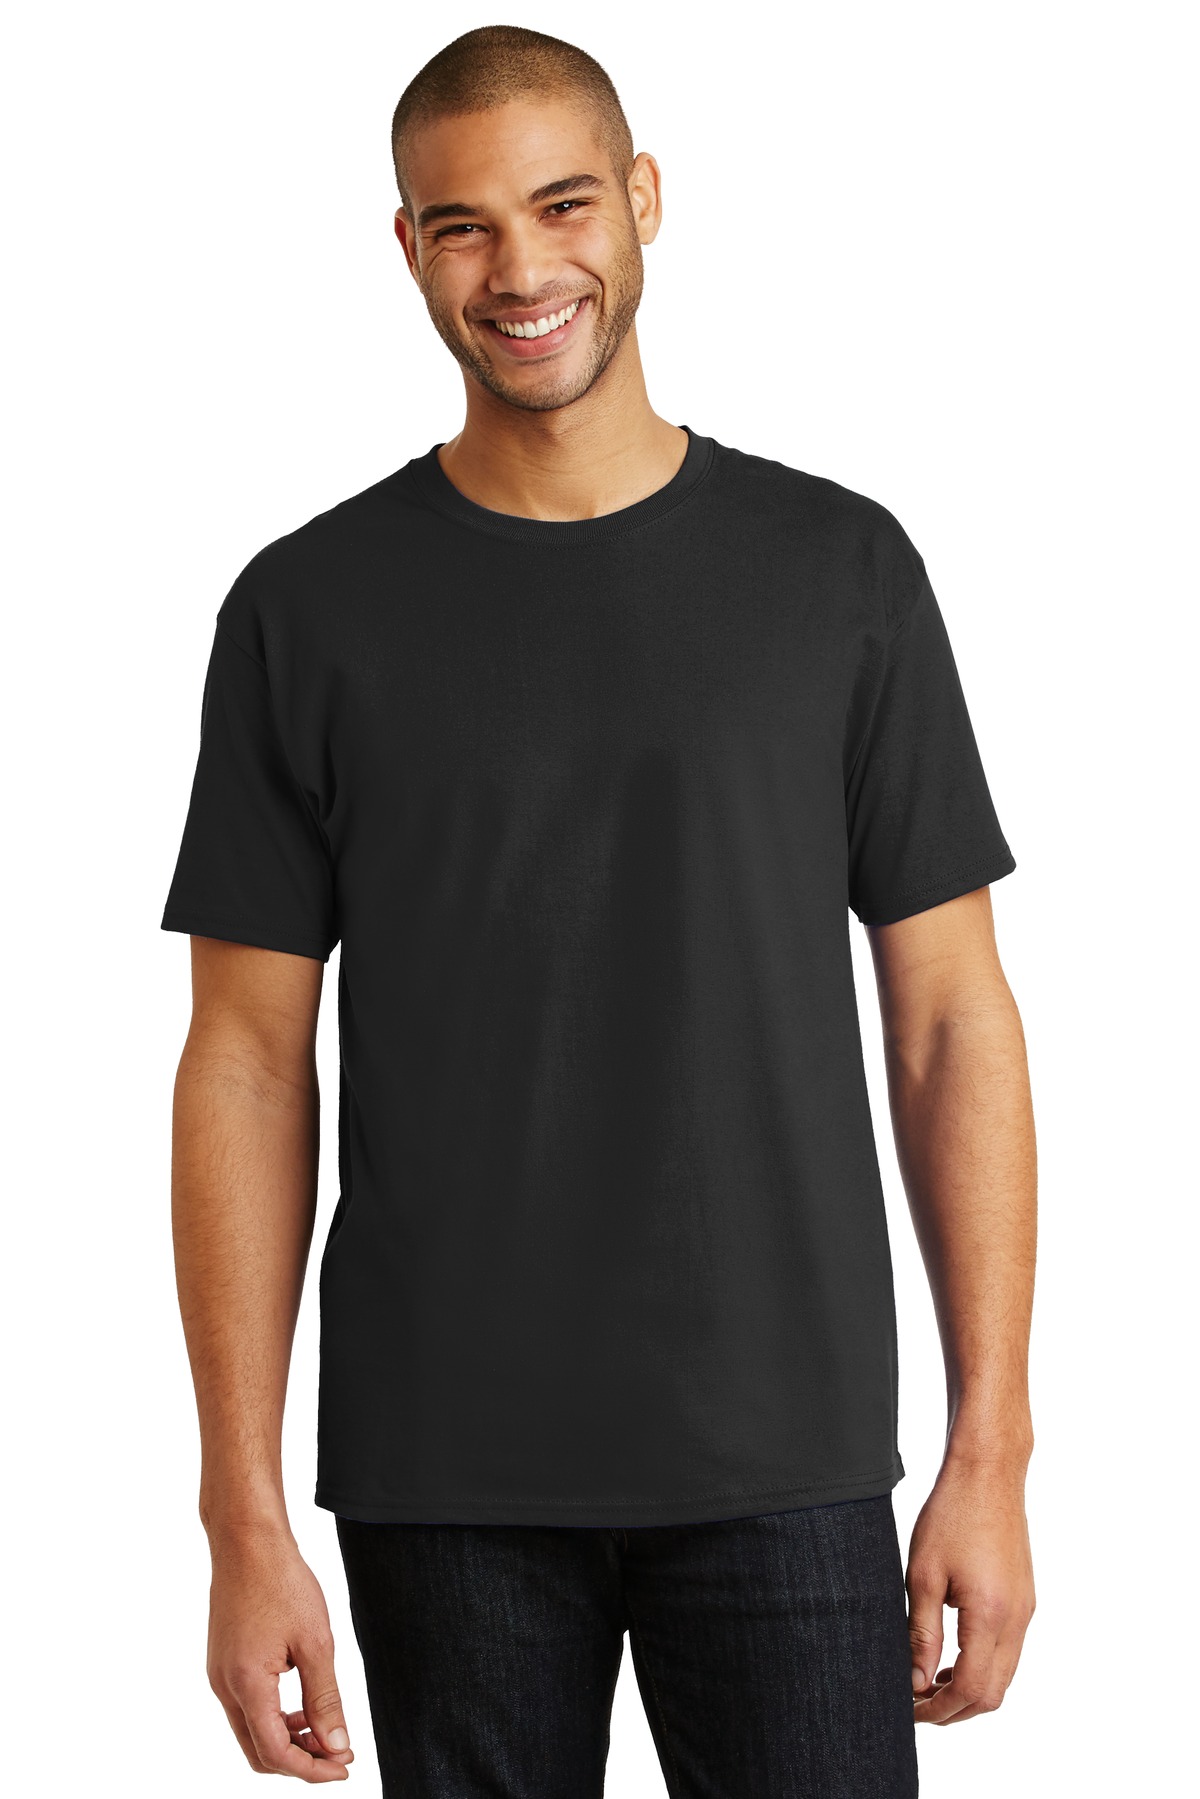 Hanes - Authentic 100% Cotton T-Shirt.  5250